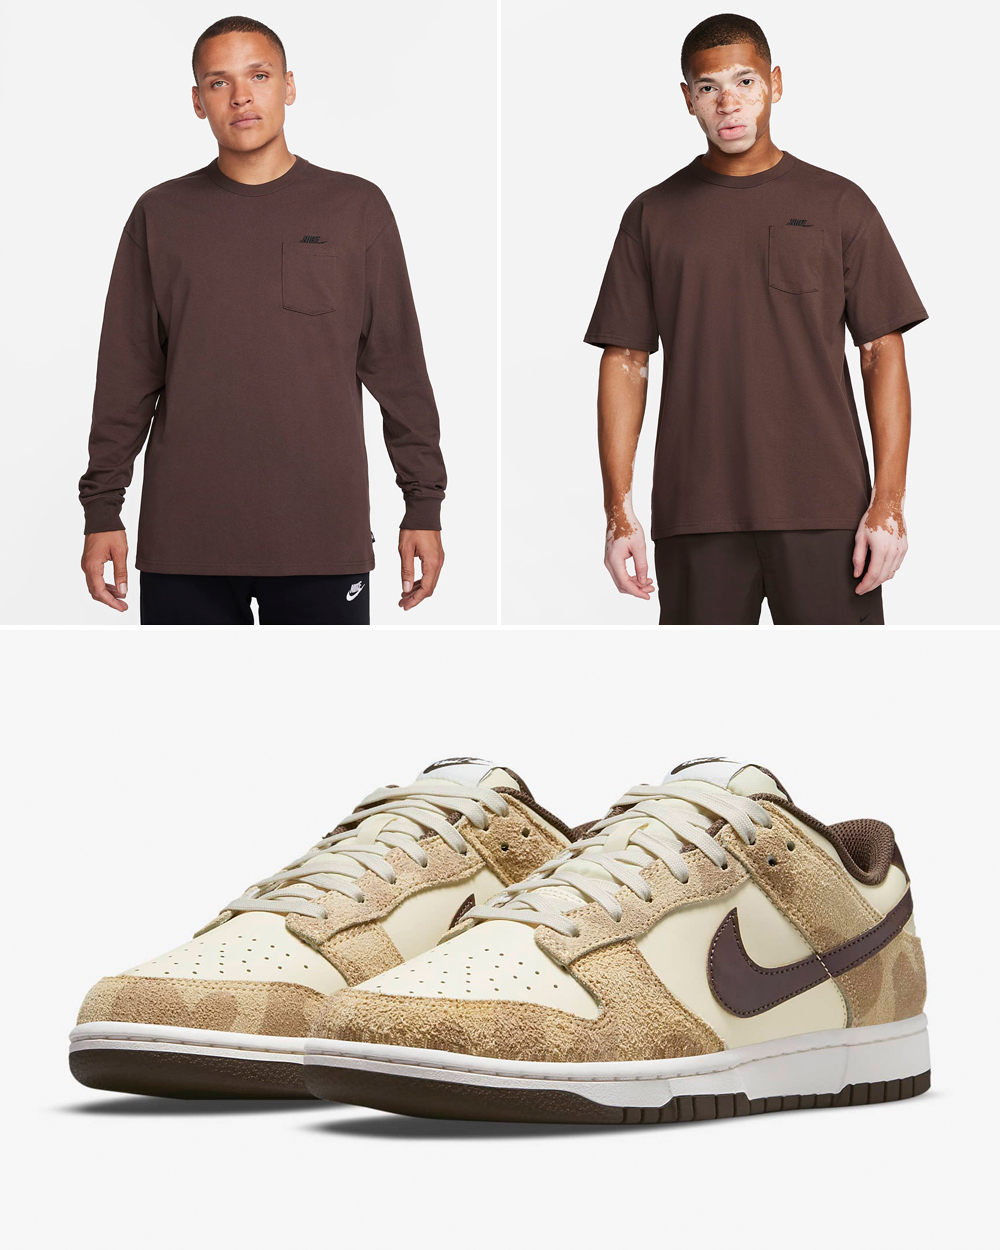 Nike-Dunk-Low-Giraffe-Cheetah-Shirts